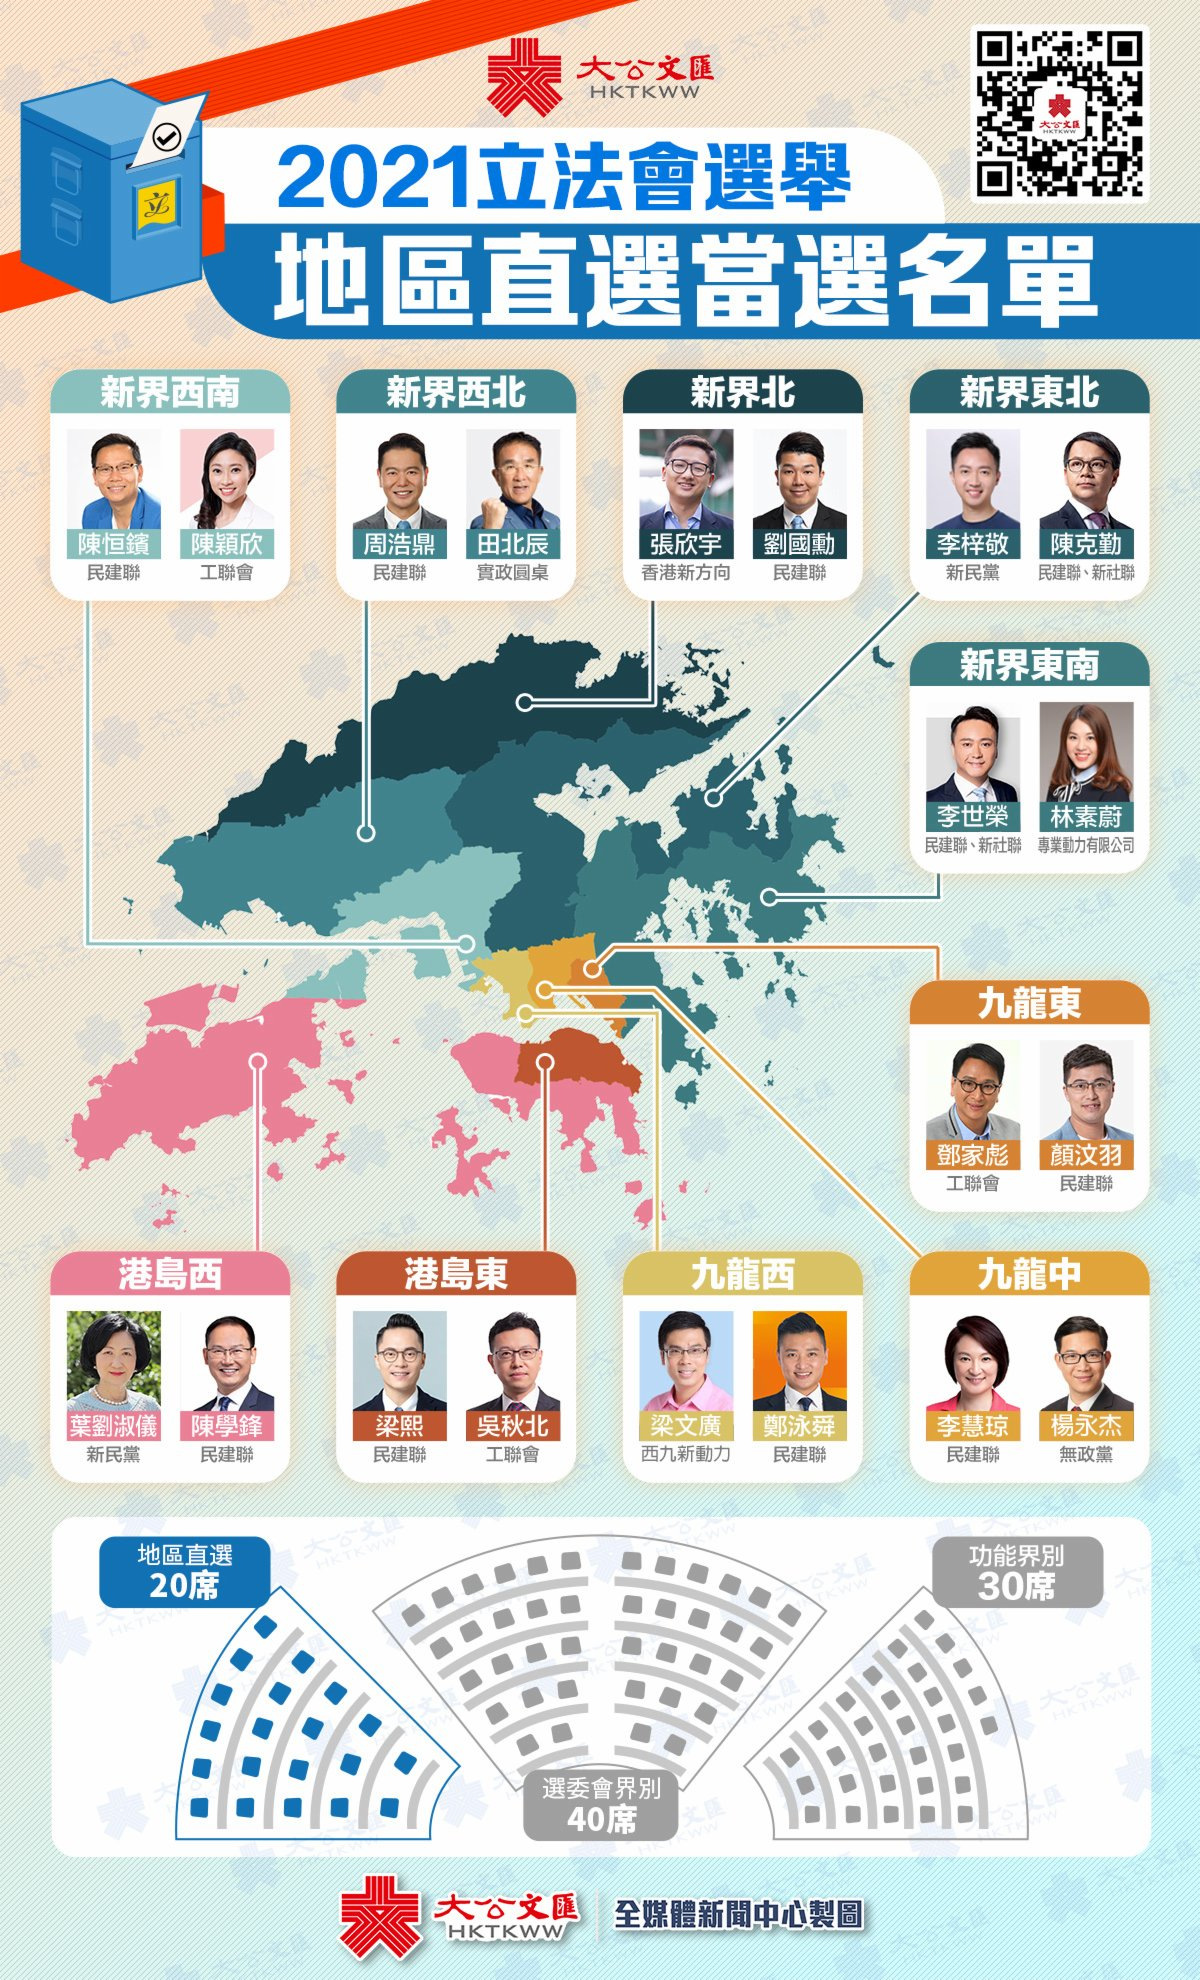 香港特区第七届立法会选举,90人当选新一届立法会议员